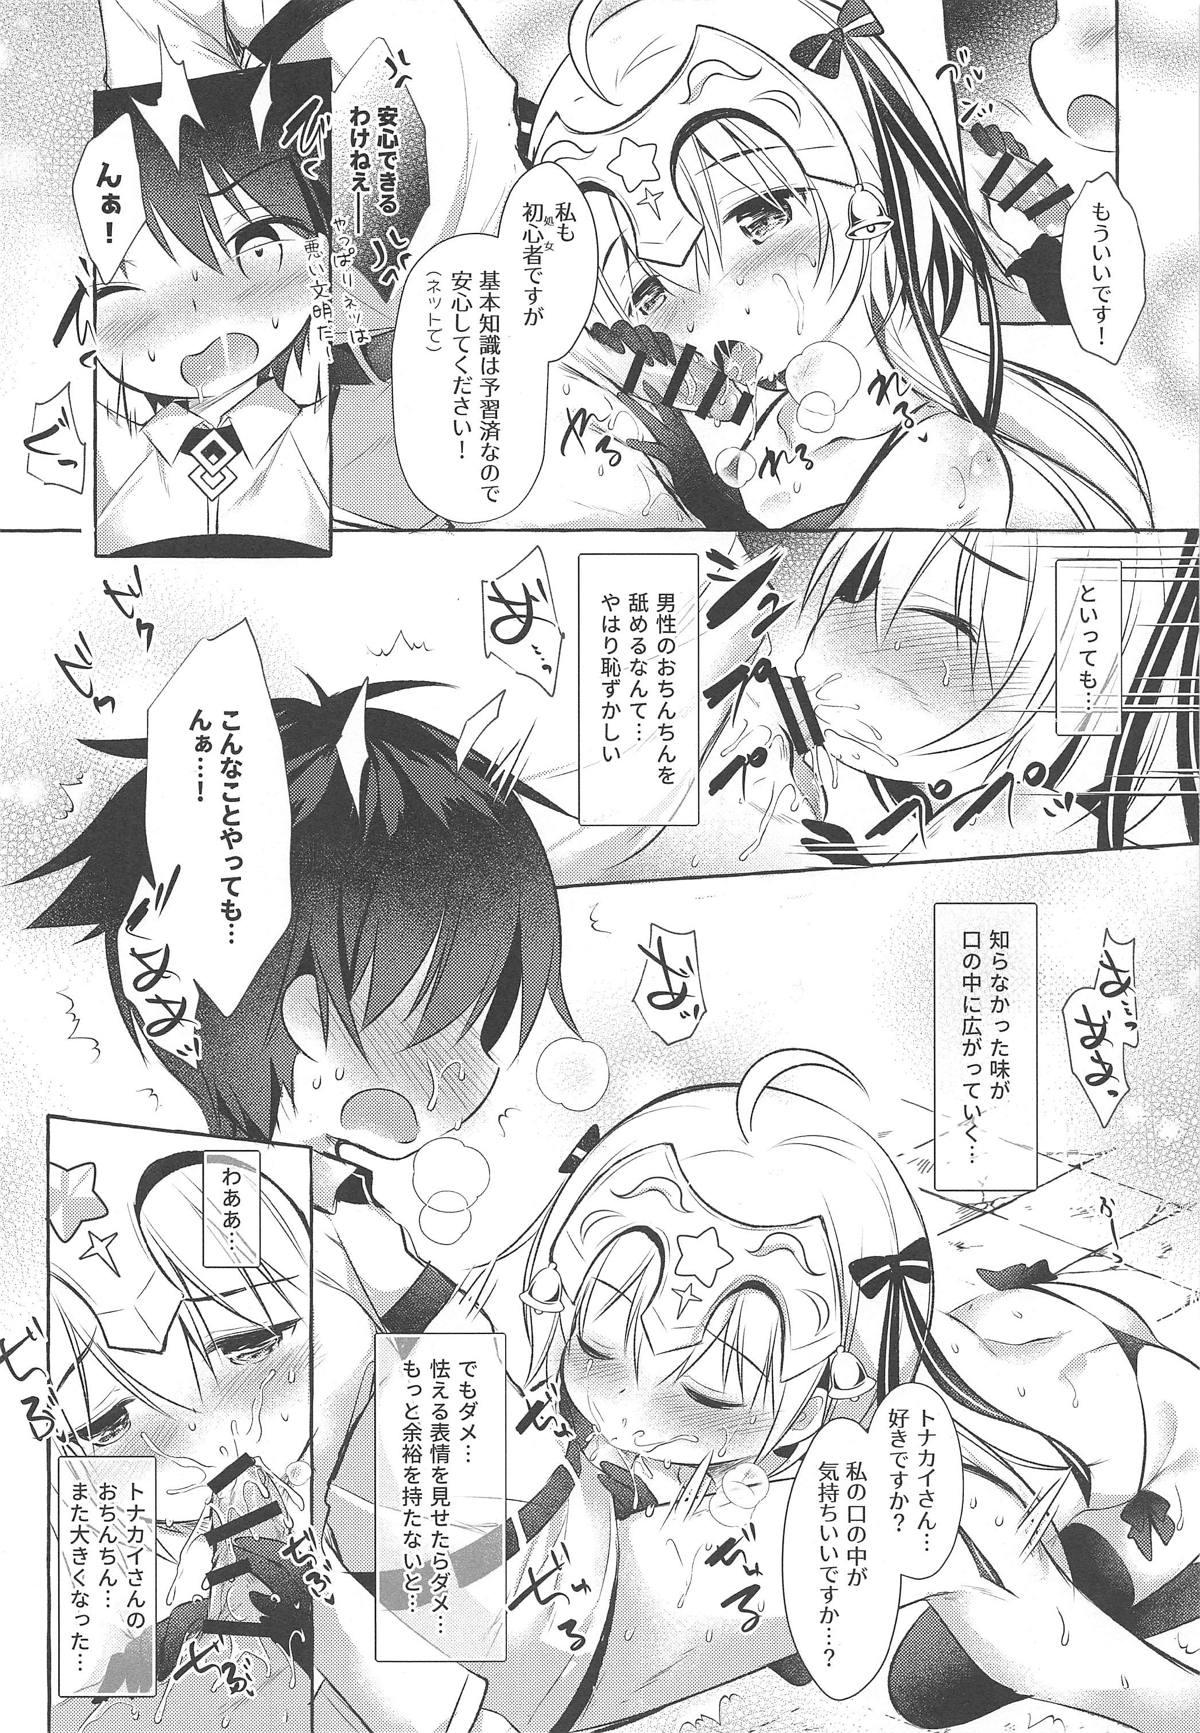 Huge Tonakai-san no ○○ wa Watashi ga Mamoru! - Fate grand order 18yo - Page 11